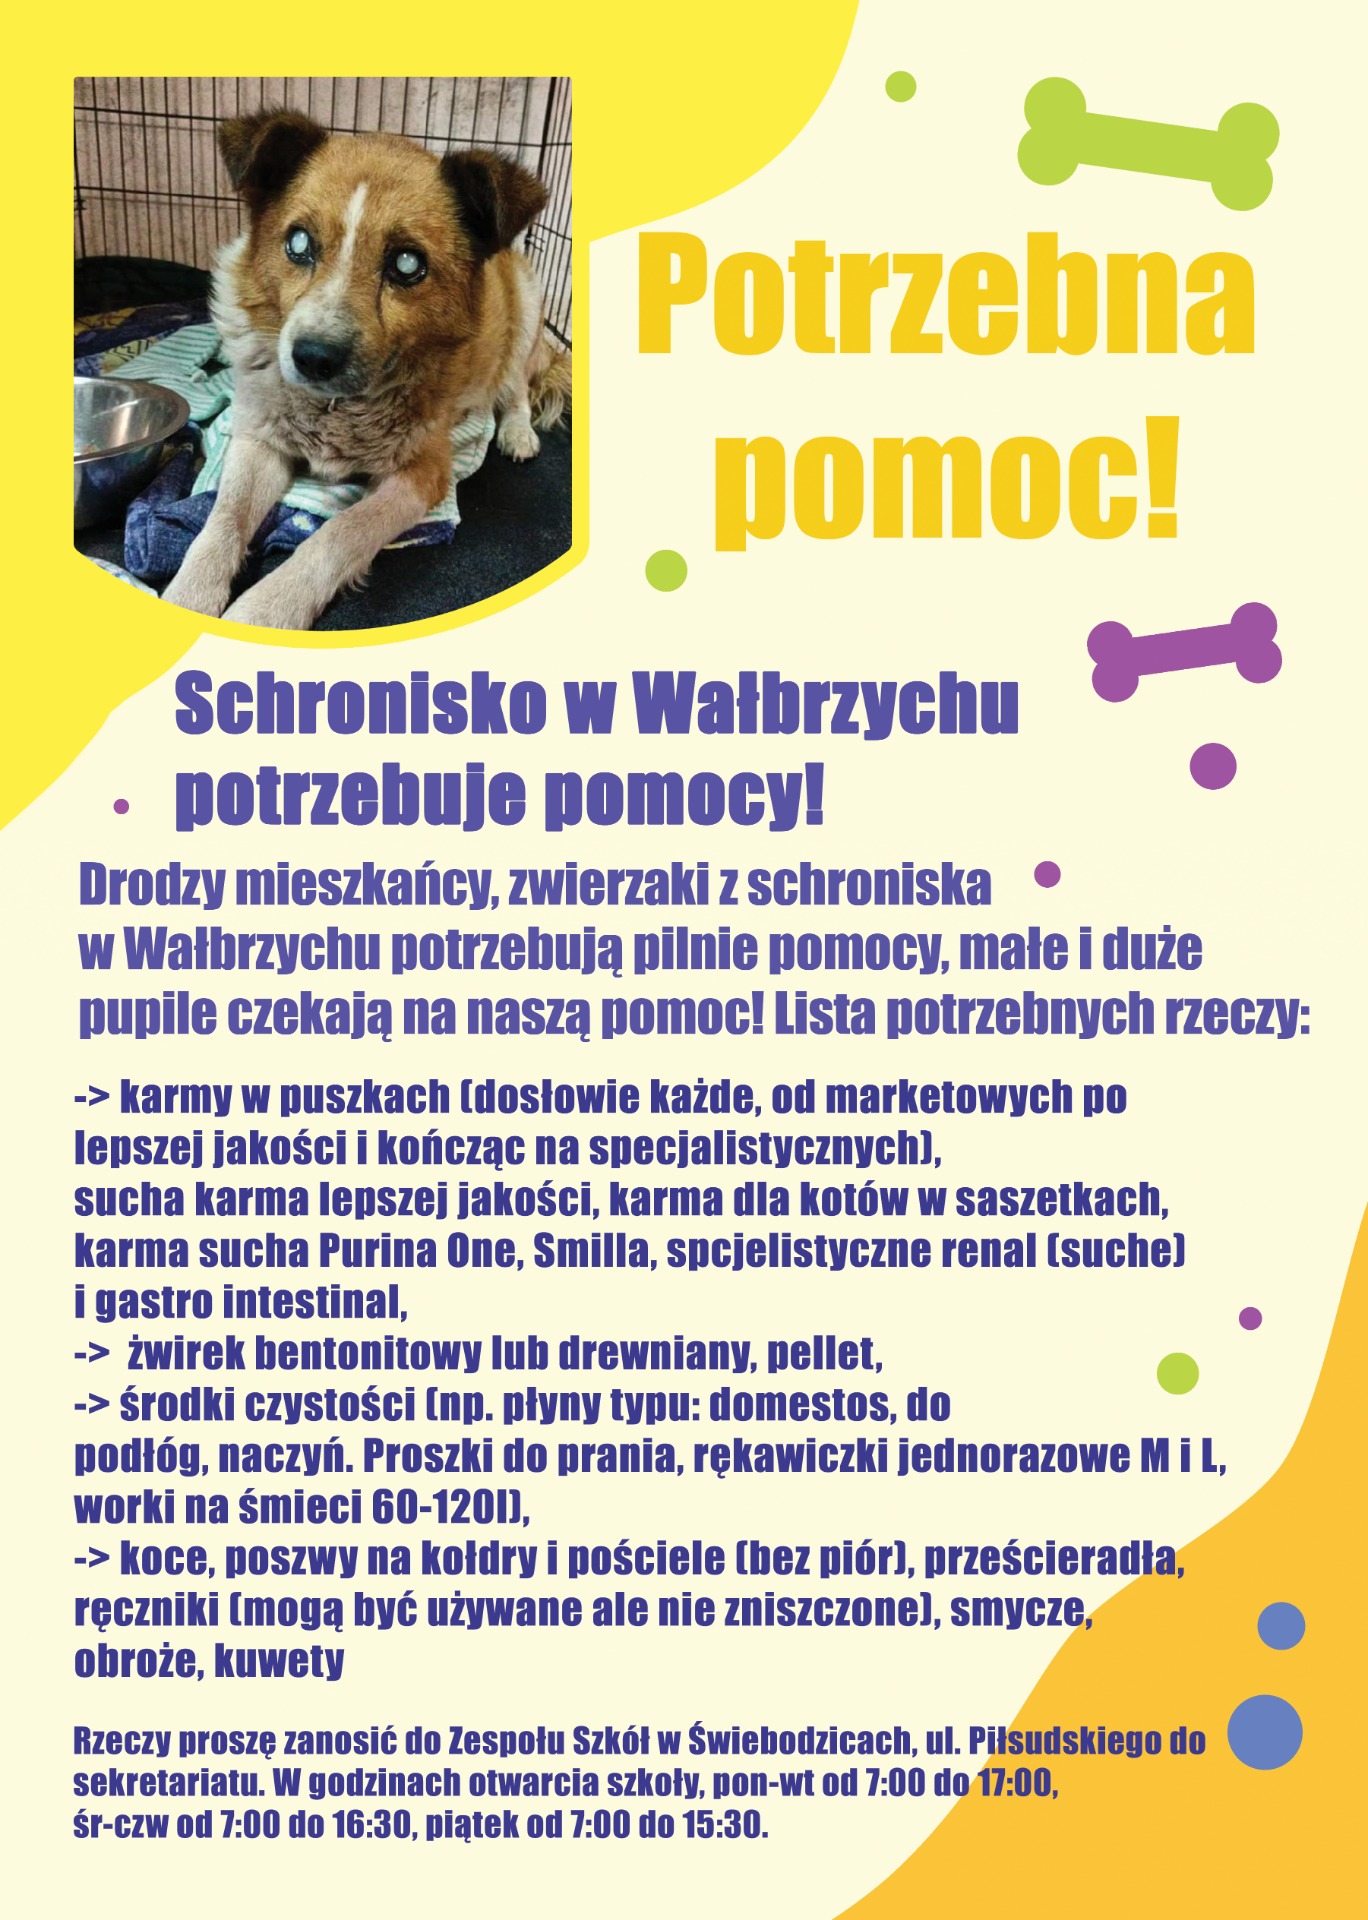 Schronisko w Wałbrzychu potrzebuje naszej pomocy! - Obrazek 1